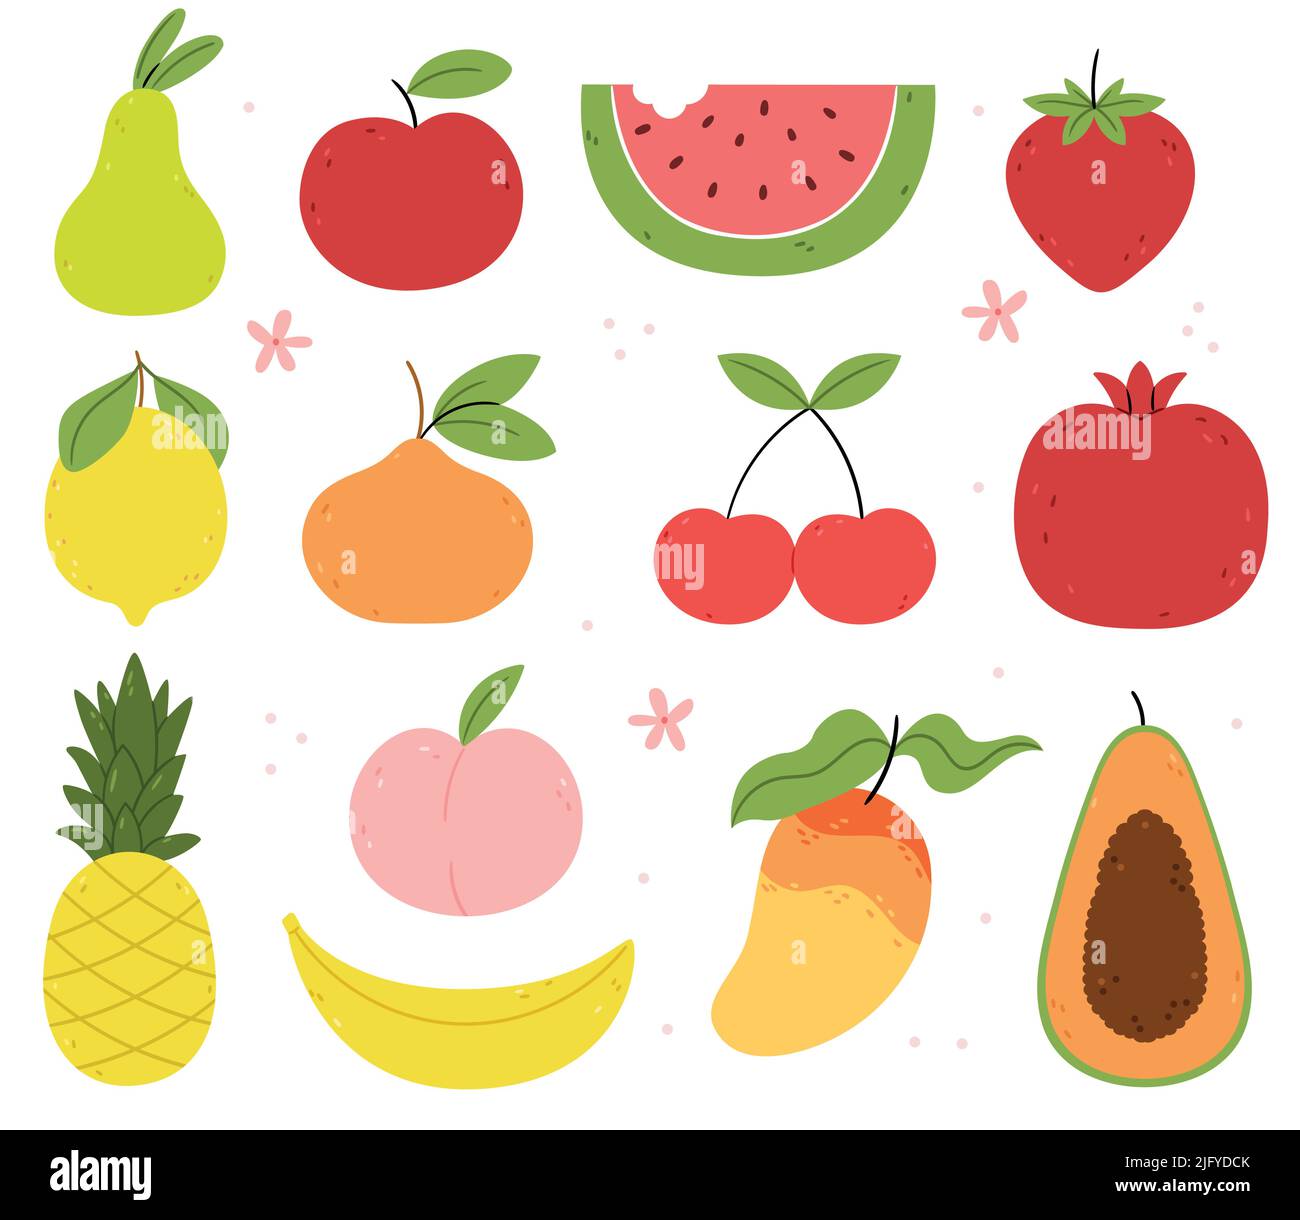 Ensemble de fruits d'été et berries.Organic produits. Pomme, orange, pastèque, fraise, poire, papaye, banane, citron, ananas. Fleurs d'été. Illustration de Vecteur